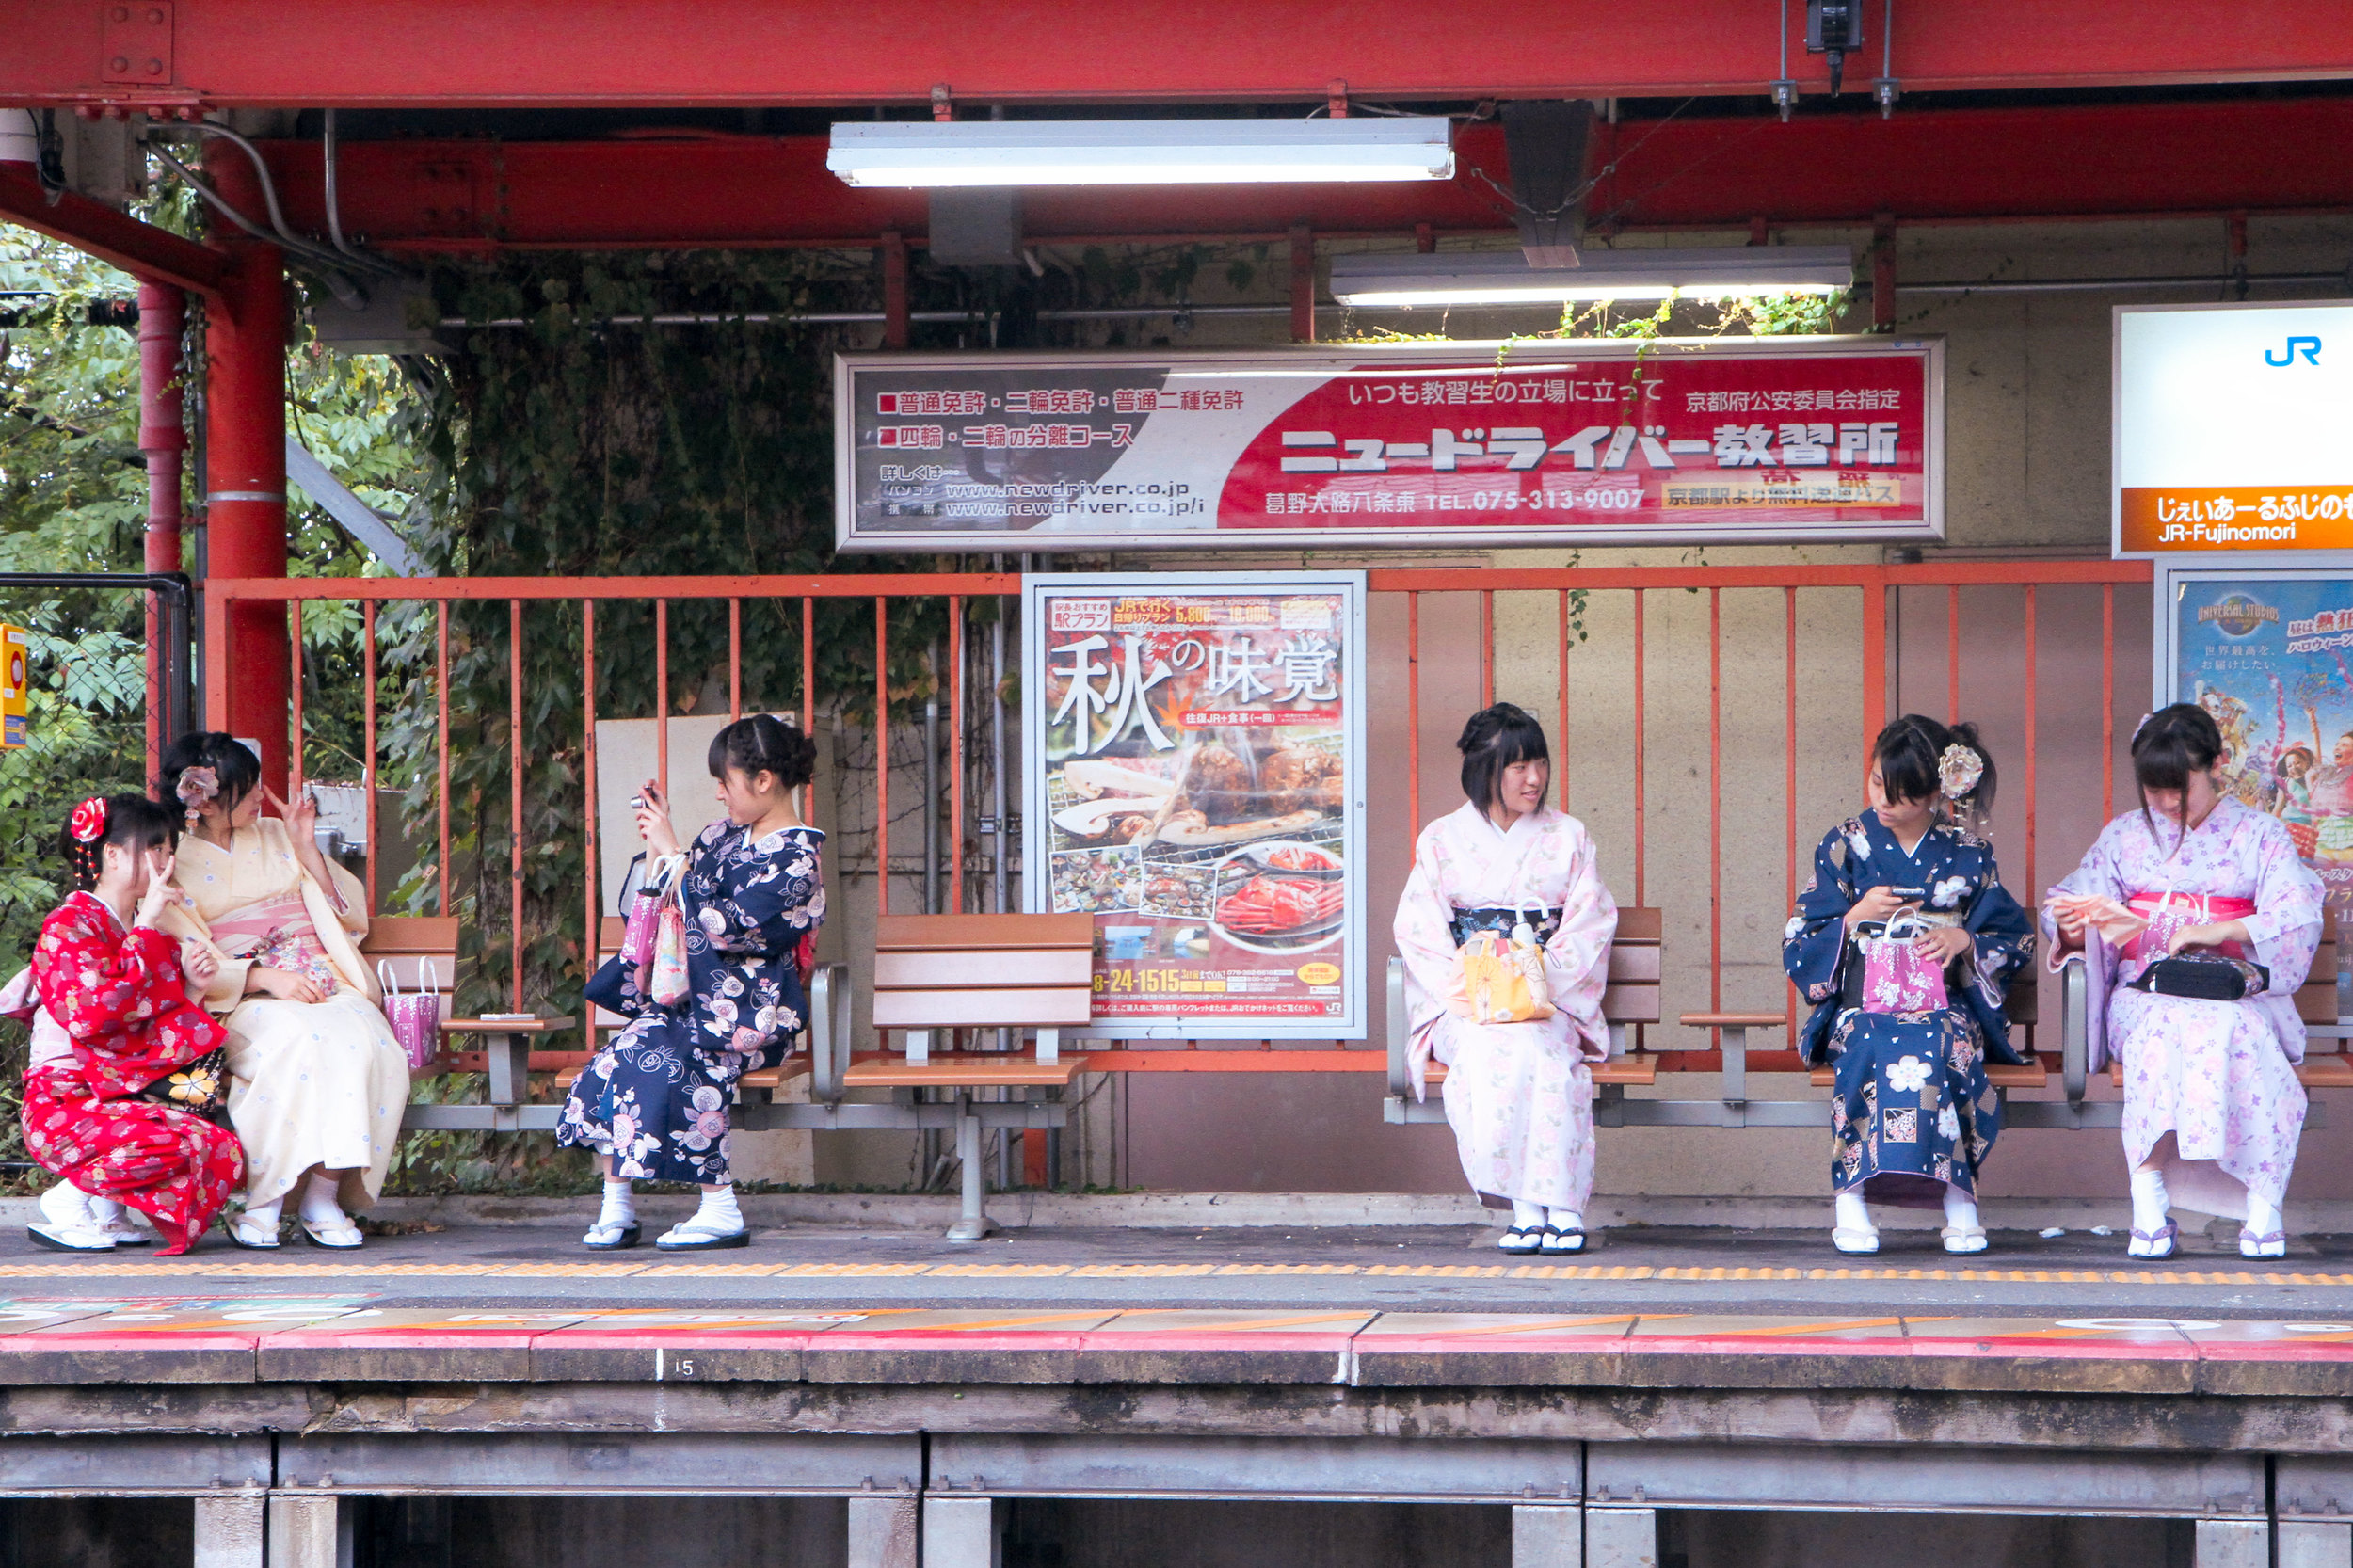 Traditional-Girls-at-Subway.jpg